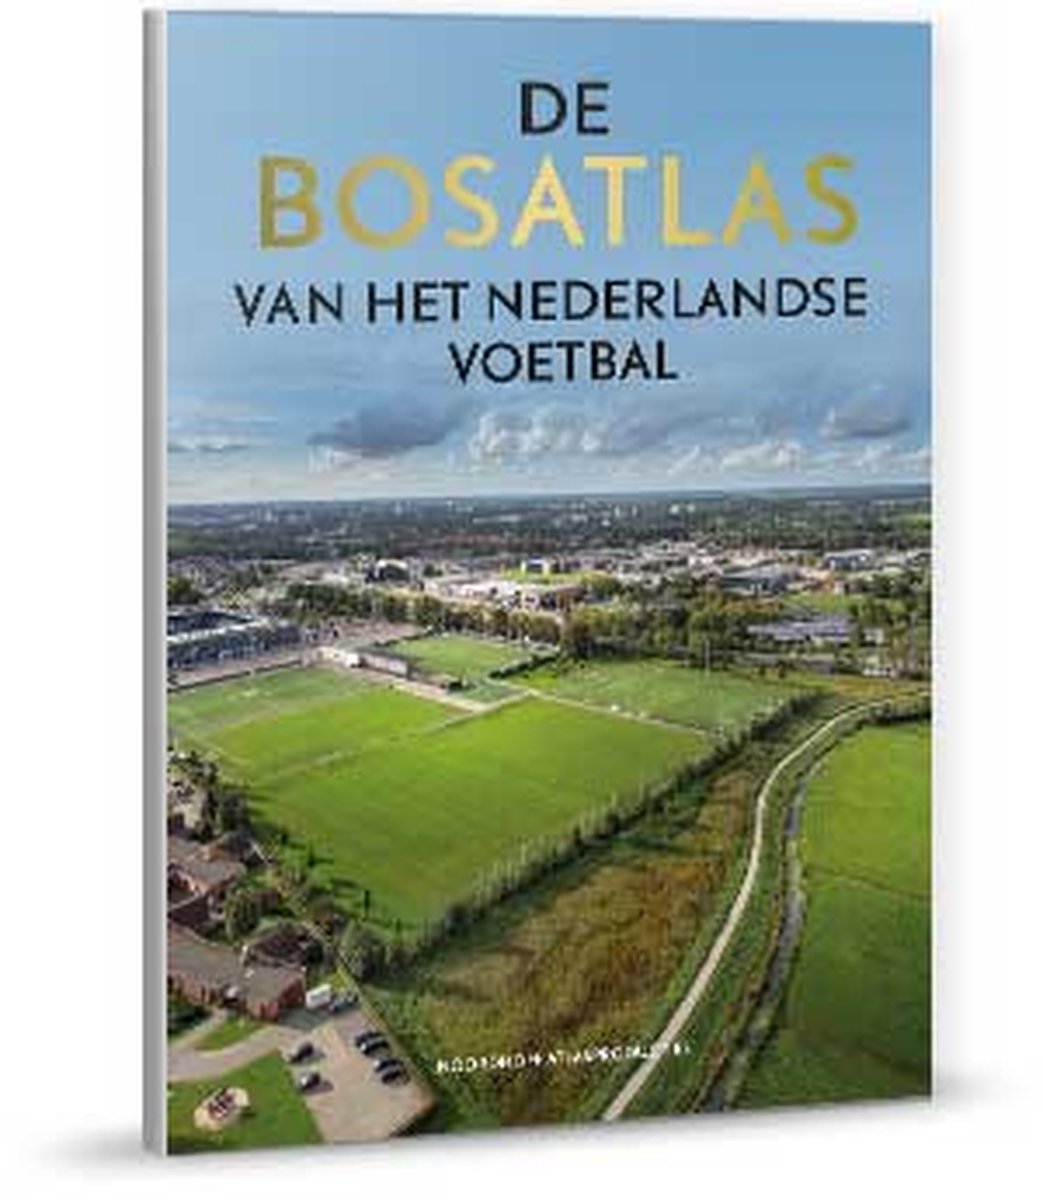 Bosatlas van het Nederlandse voetbal - Diverse auteurs